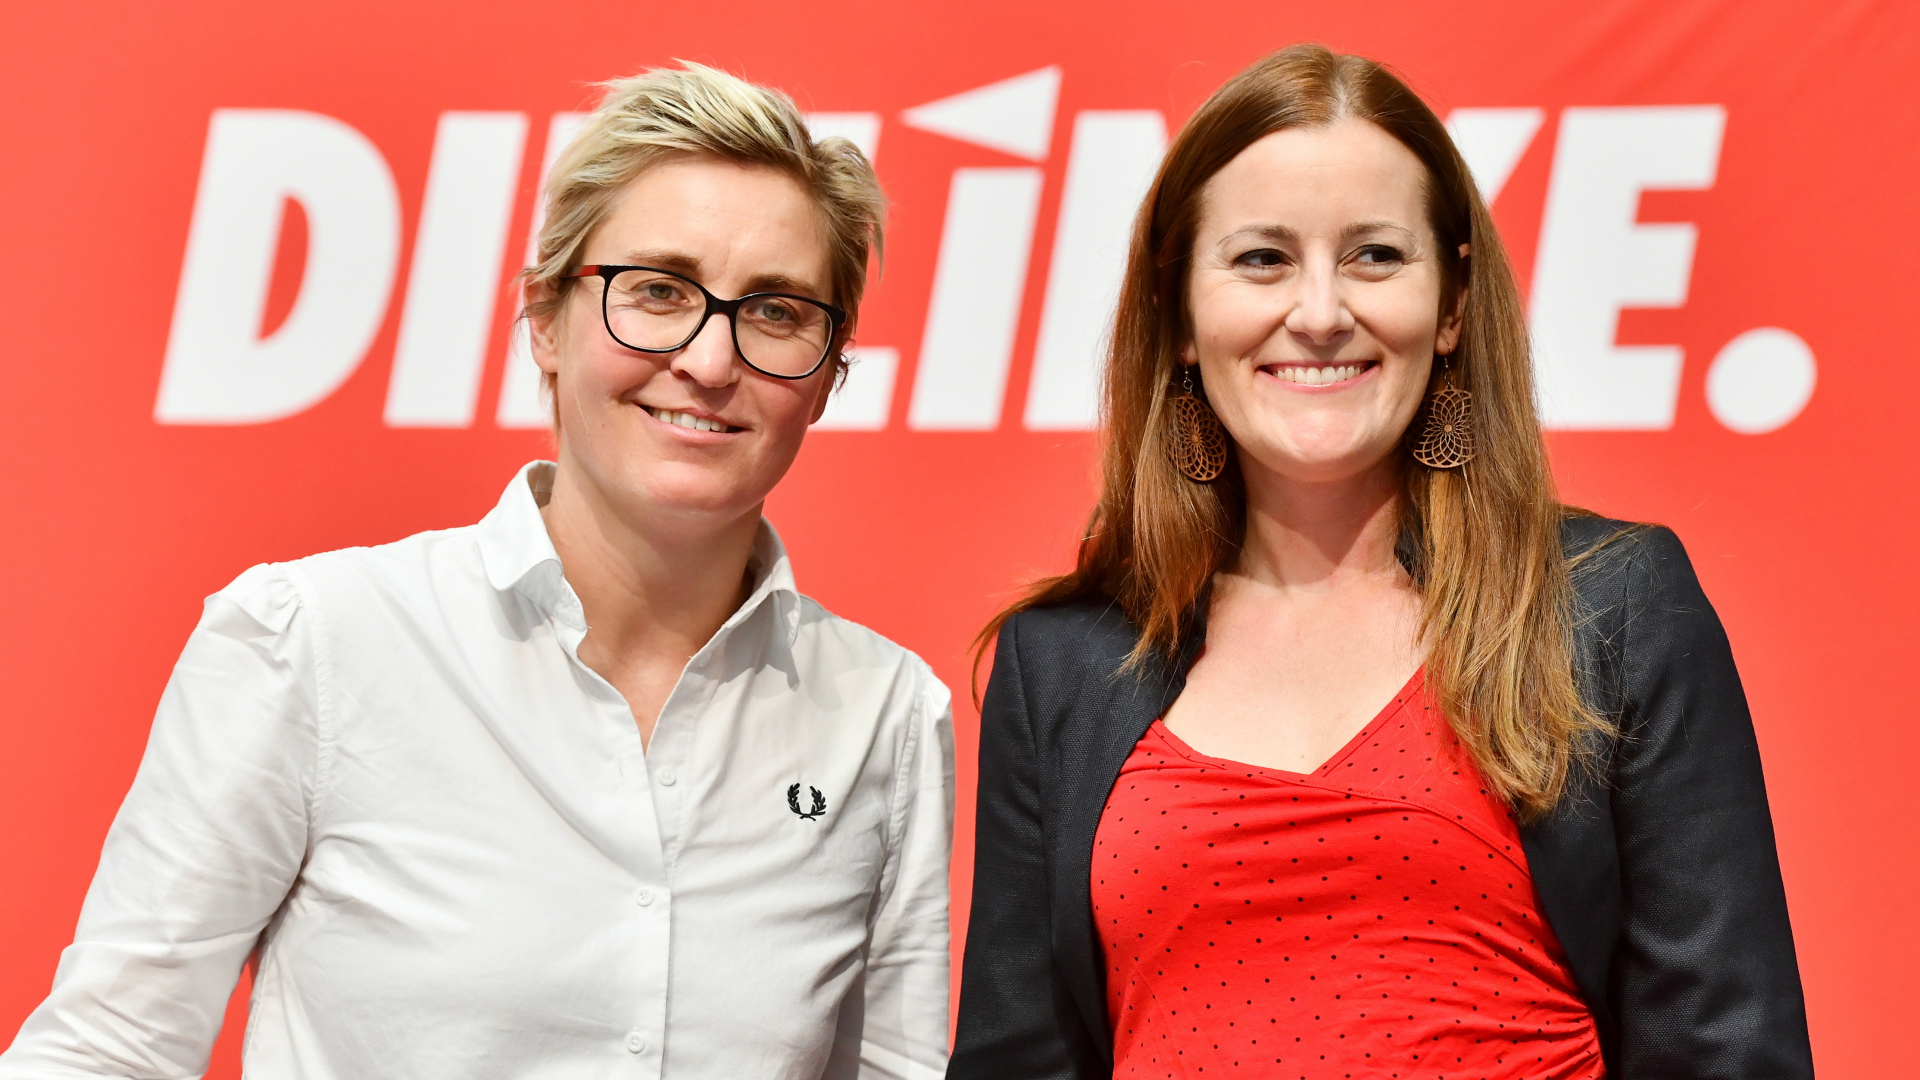 Die Kanidatinnen für den Parteicorsitz der Linken, Susanne Hennig-Wellsow und Janine Wissler | Bildquelle: dpa